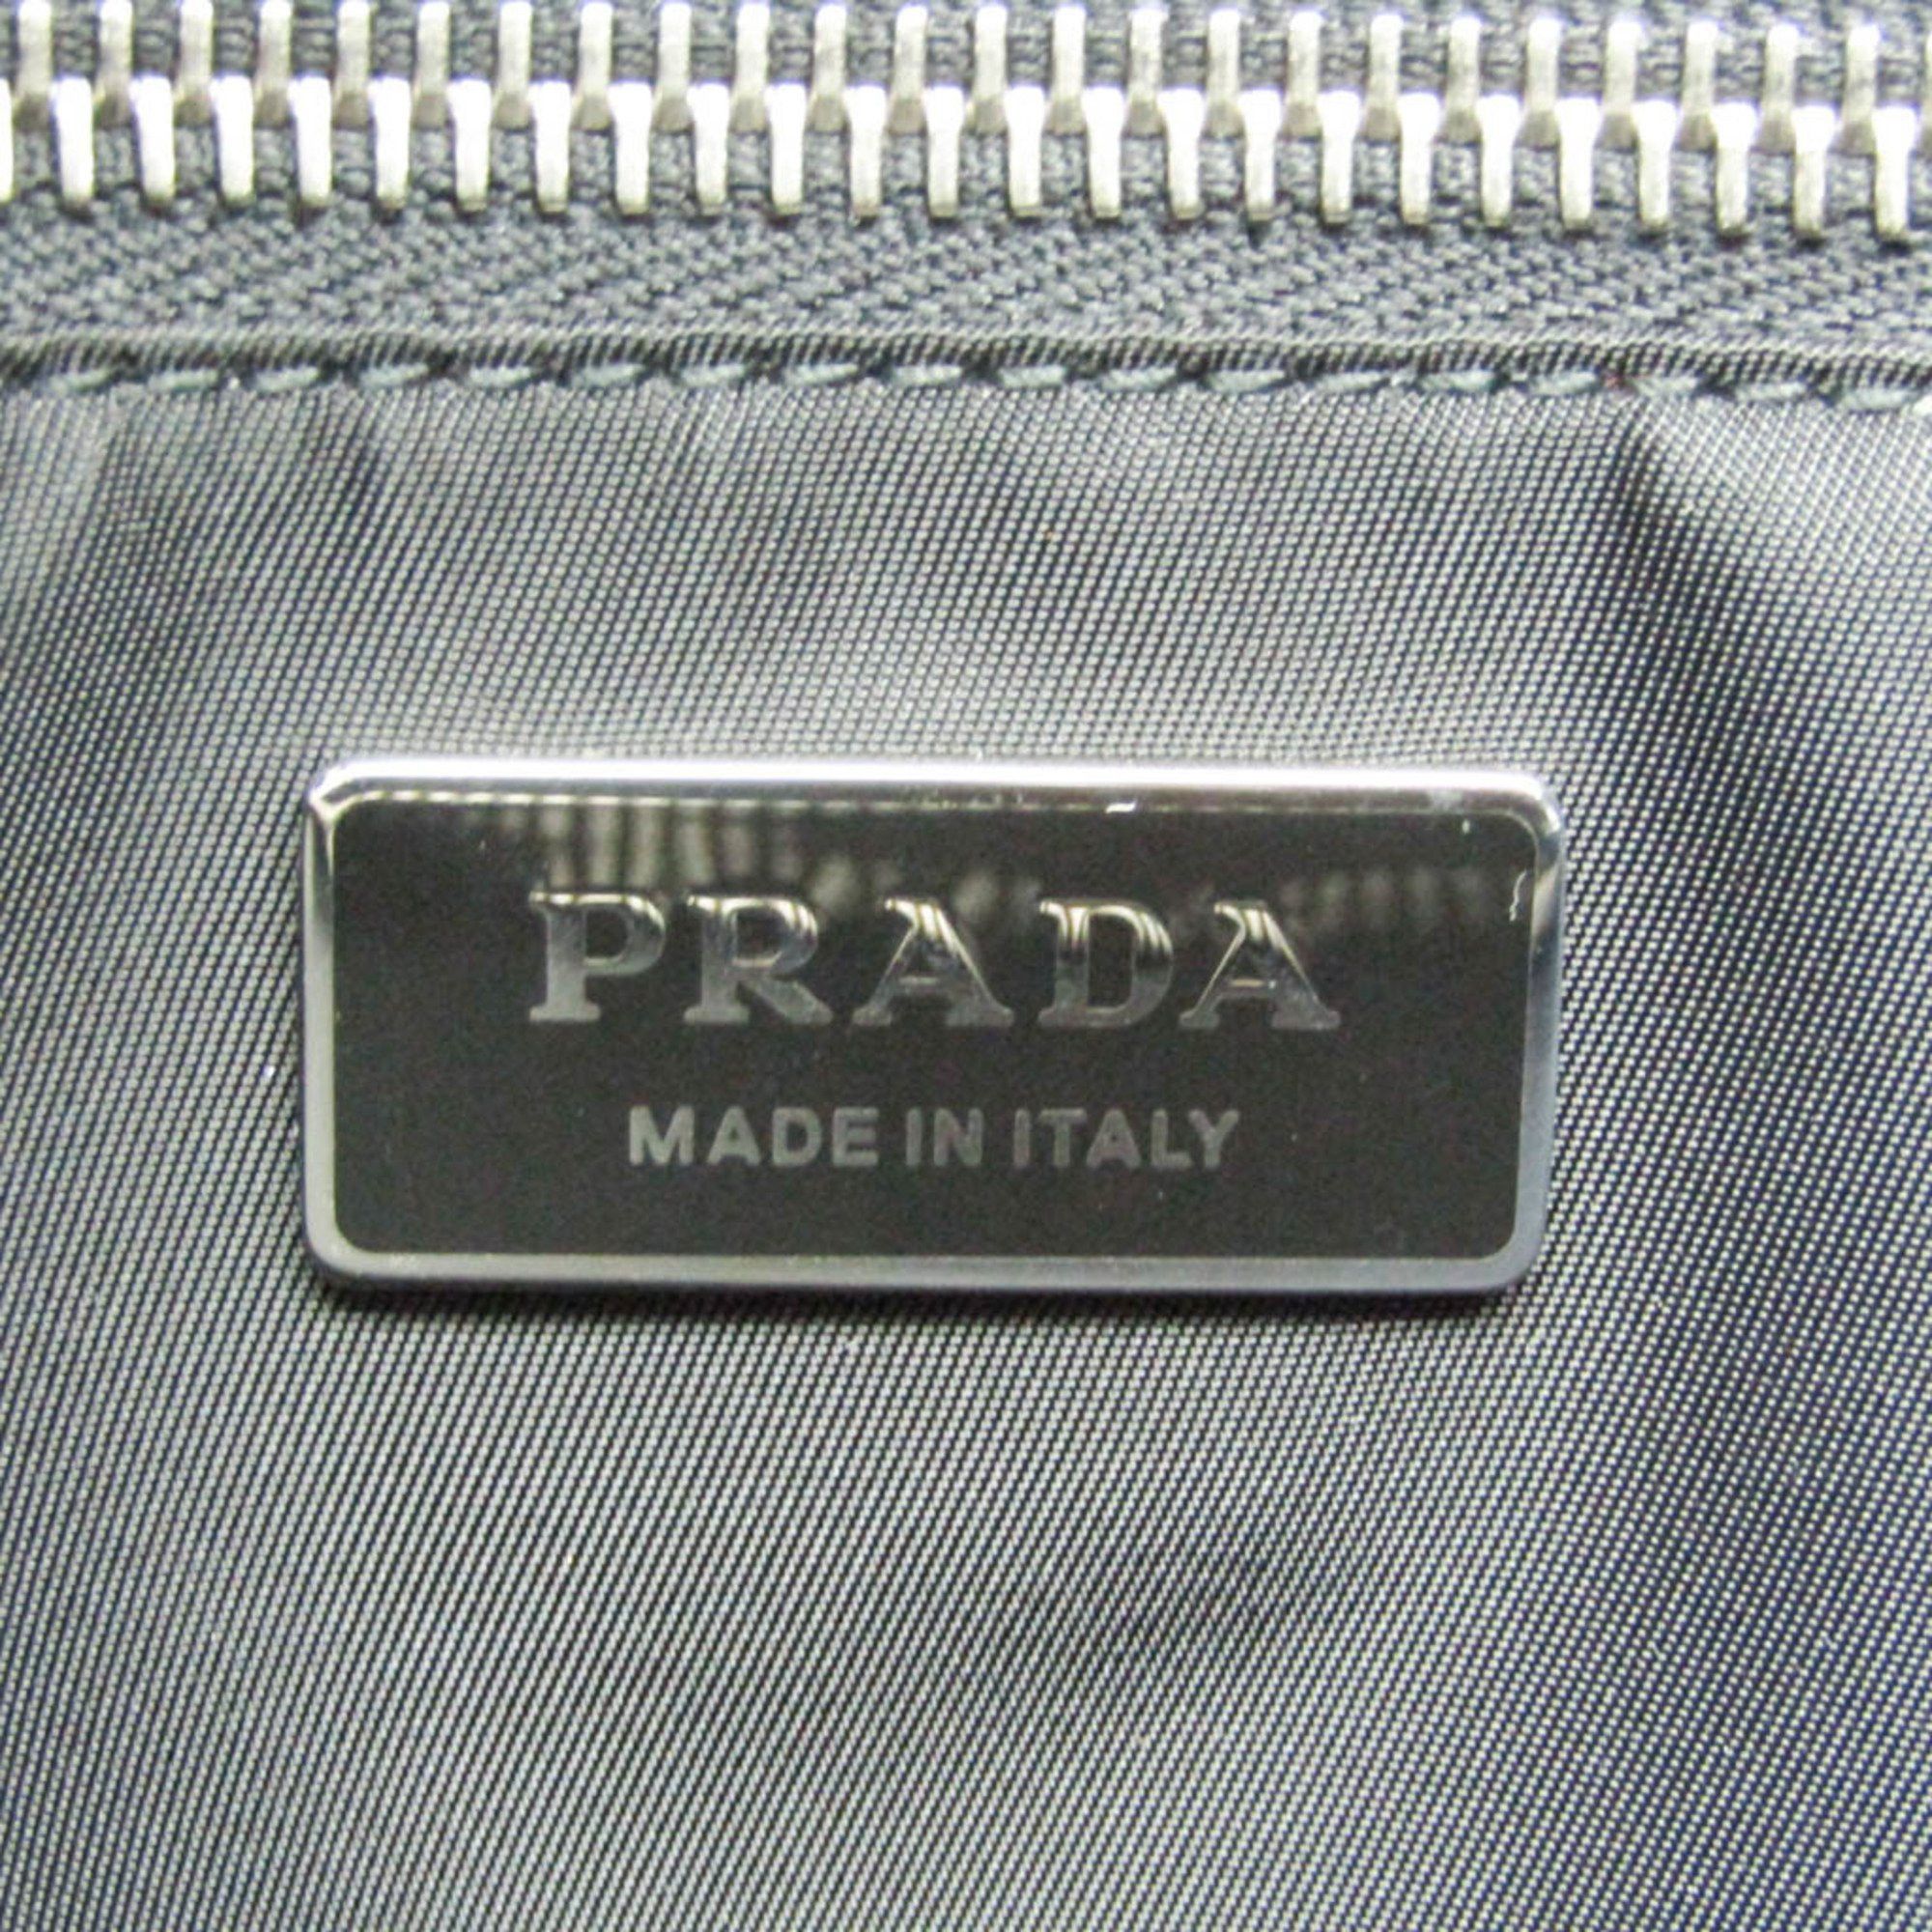 Prada Prada Ouverture handbag Size ONE SIZE - 5 Thumbnail